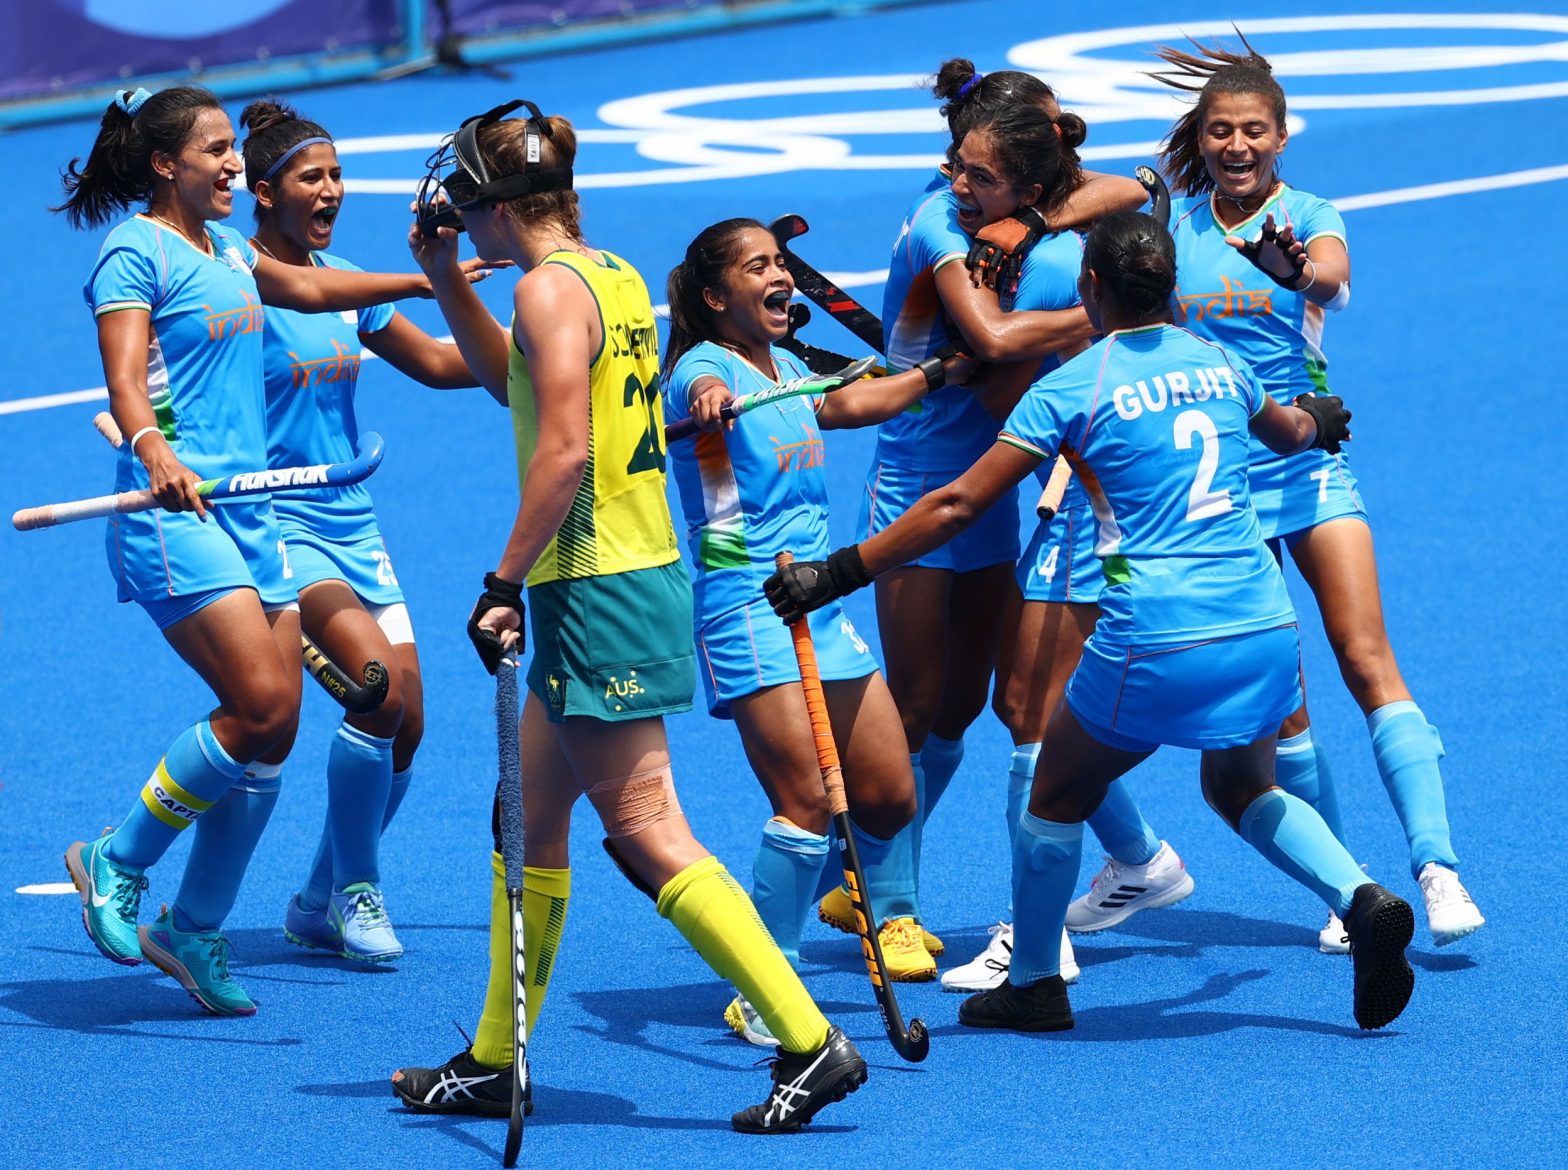 भारतीय महिला हॉकी टीम दक्षिण अफ्रीका को हराकर हॉकी फाइव्स विश्व कप के फाइनल में